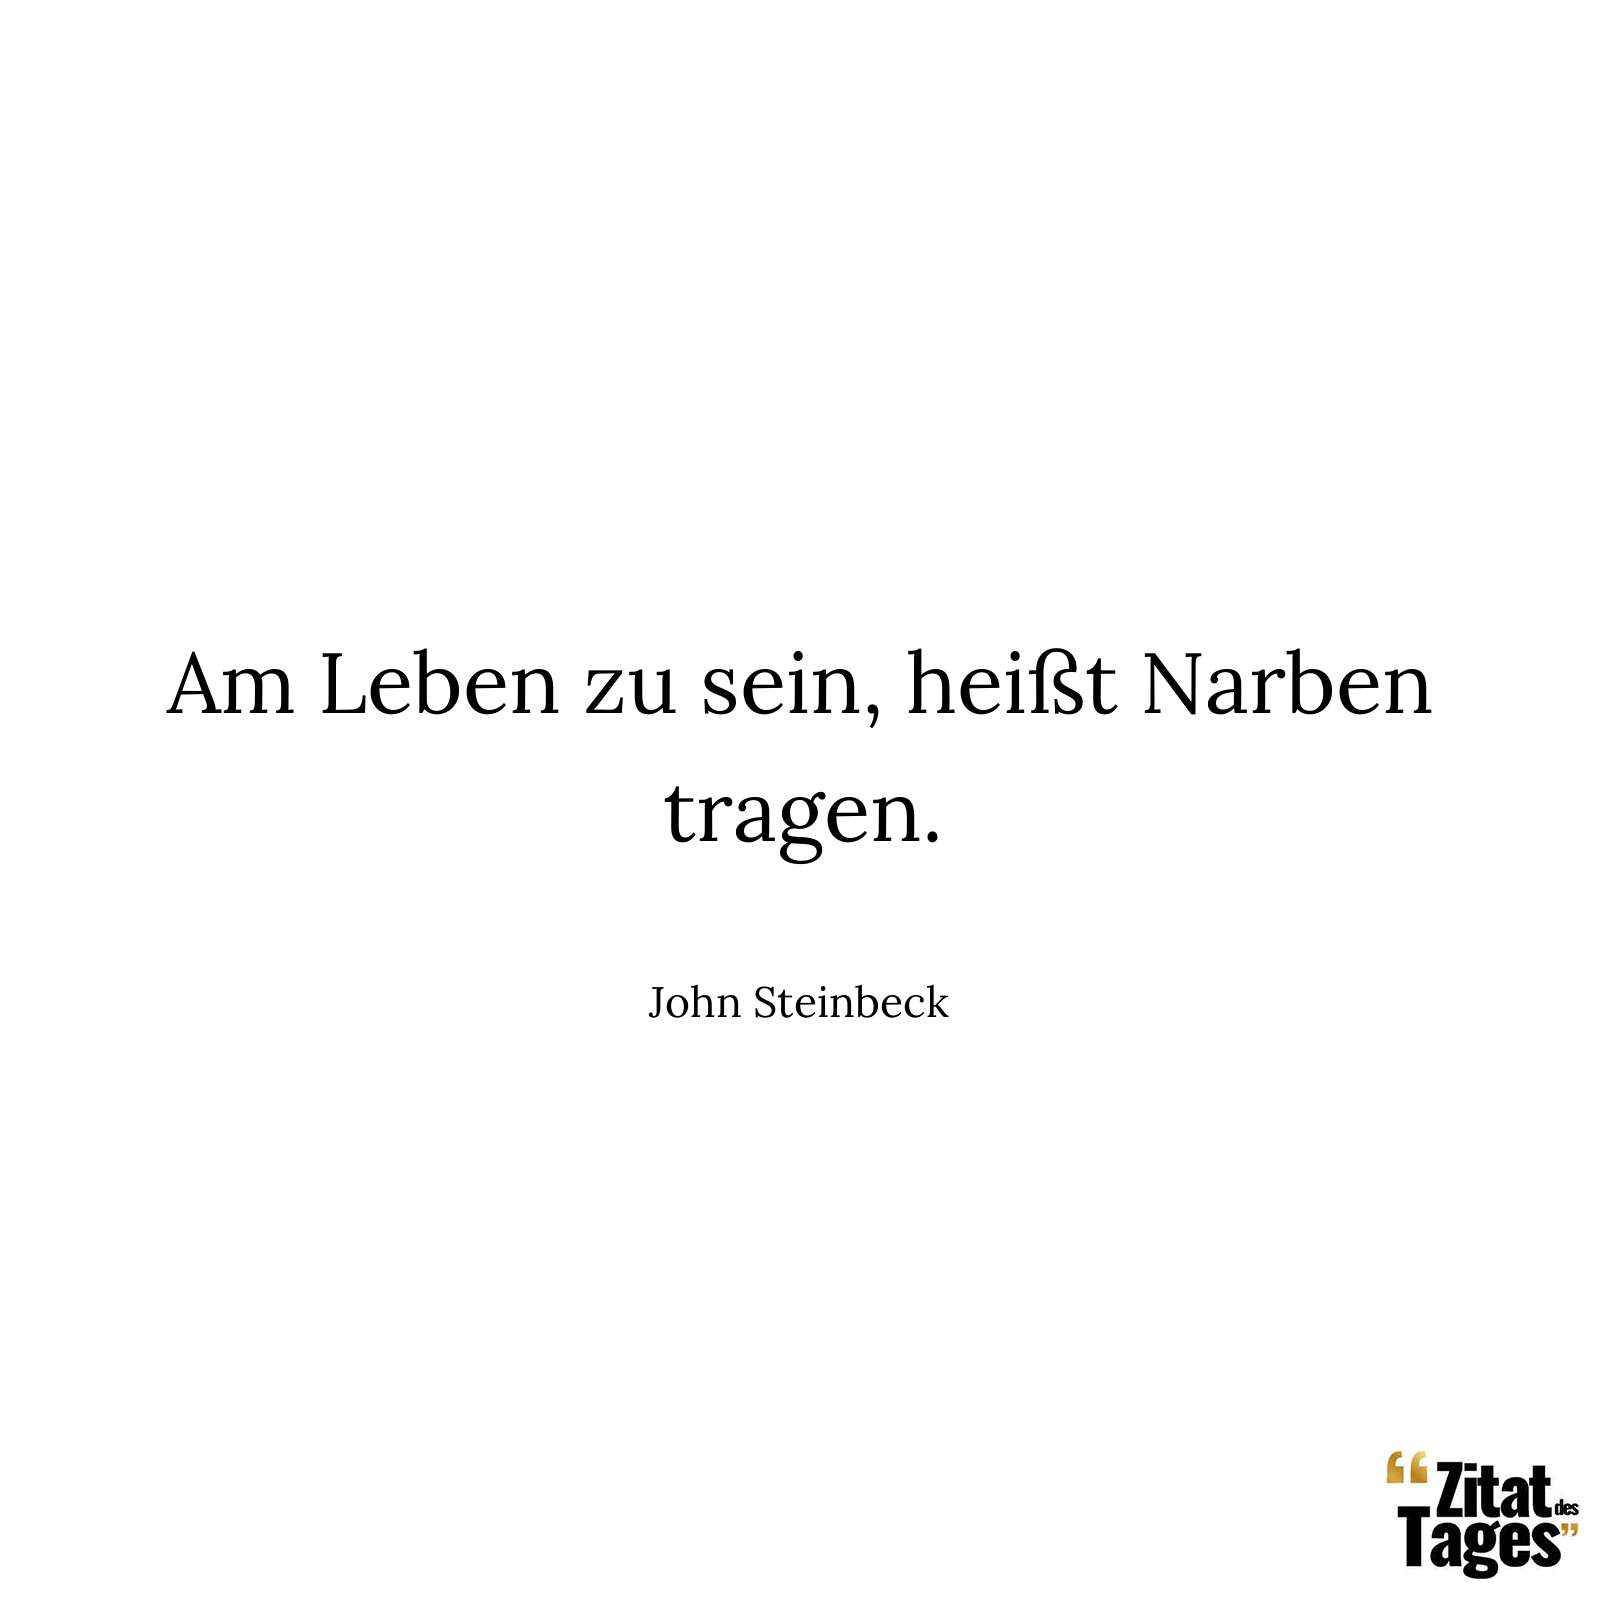 Am Leben zu sein, heißt Narben tragen. - John Steinbeck